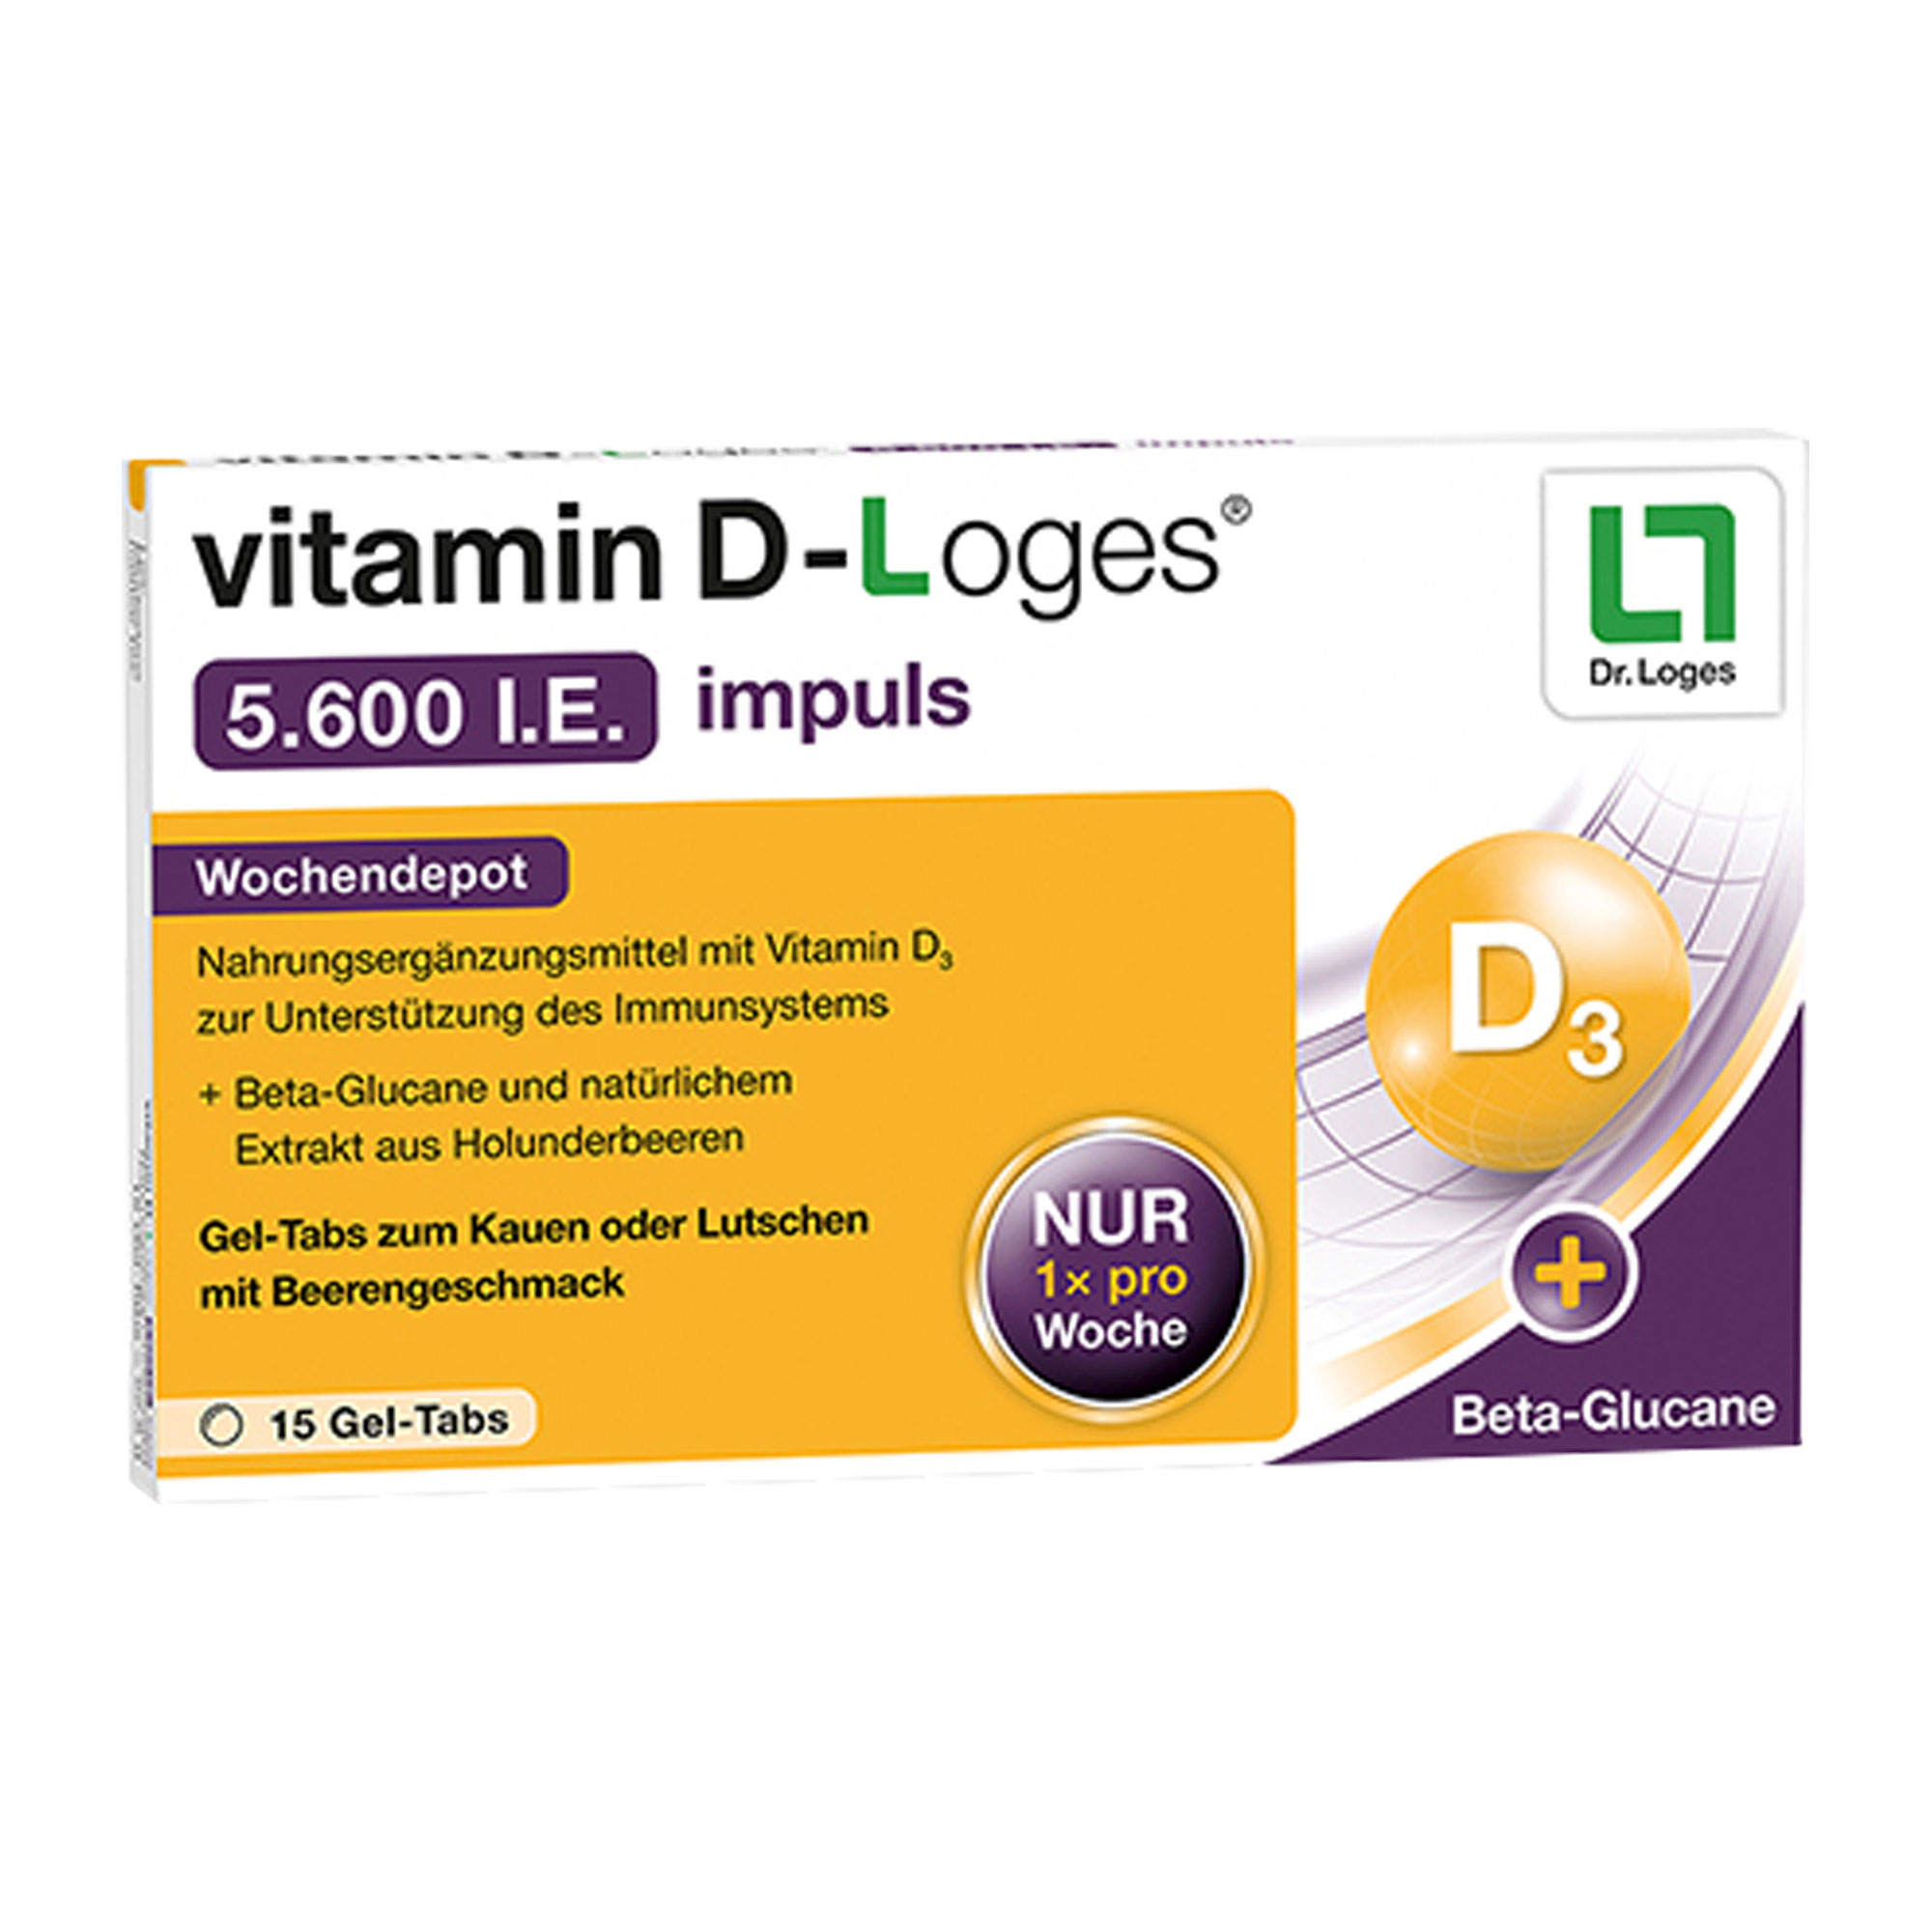 Nahrungsergänzungsmittel mit Vitamin D3 und Beta-Glucan.